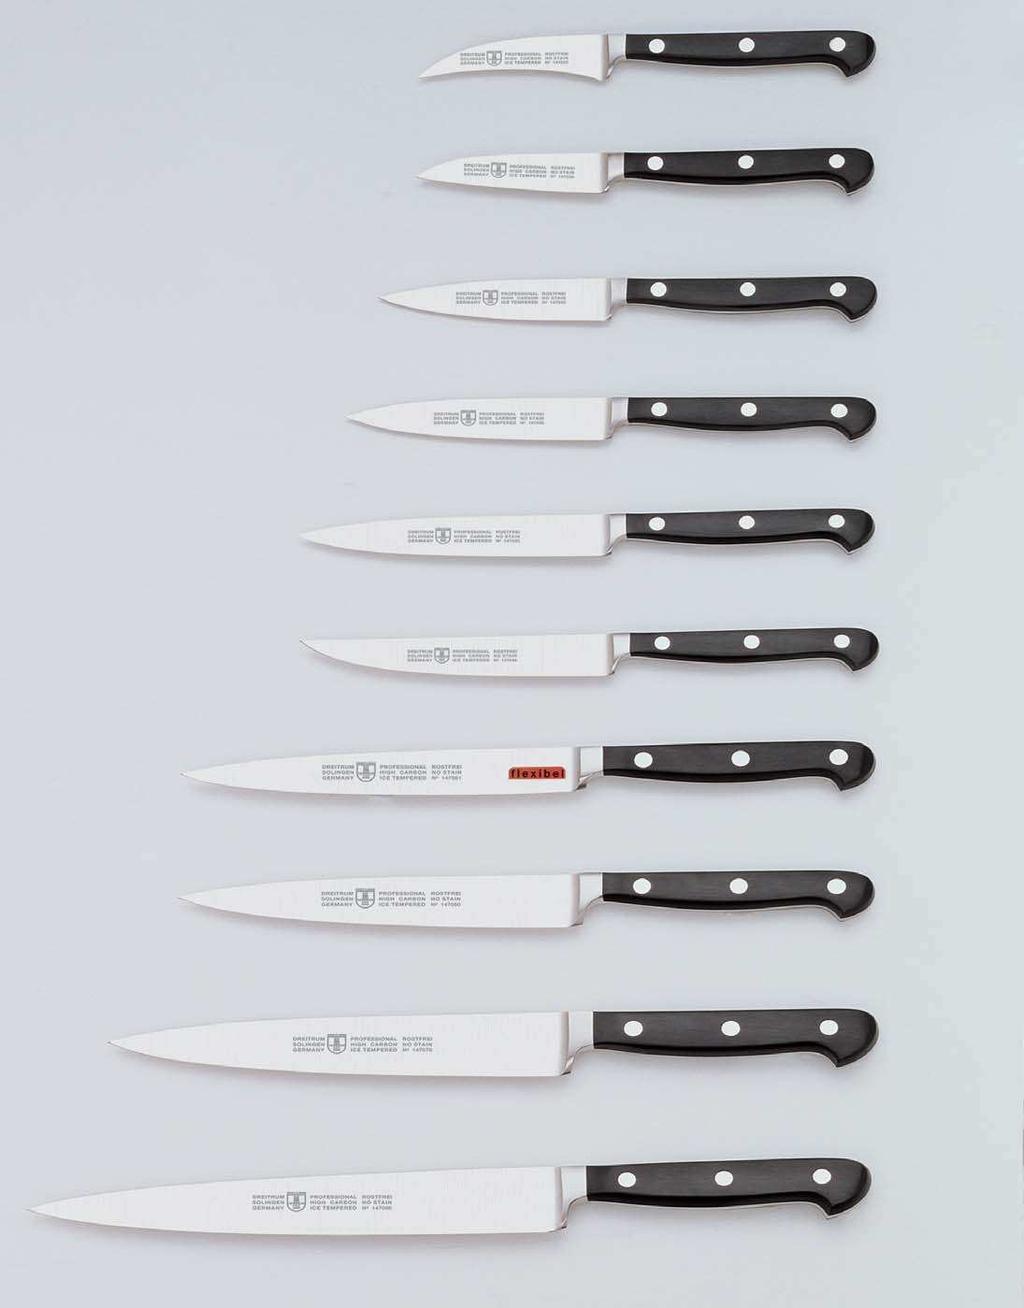 Profi-Messer geschmiedet Couteaux Professionnels forgès Professional knives forged Cuchillos Profesionales templado al hielo 14 70 22 3 = 8 cm 14 70 30 3 = 8 cm 14